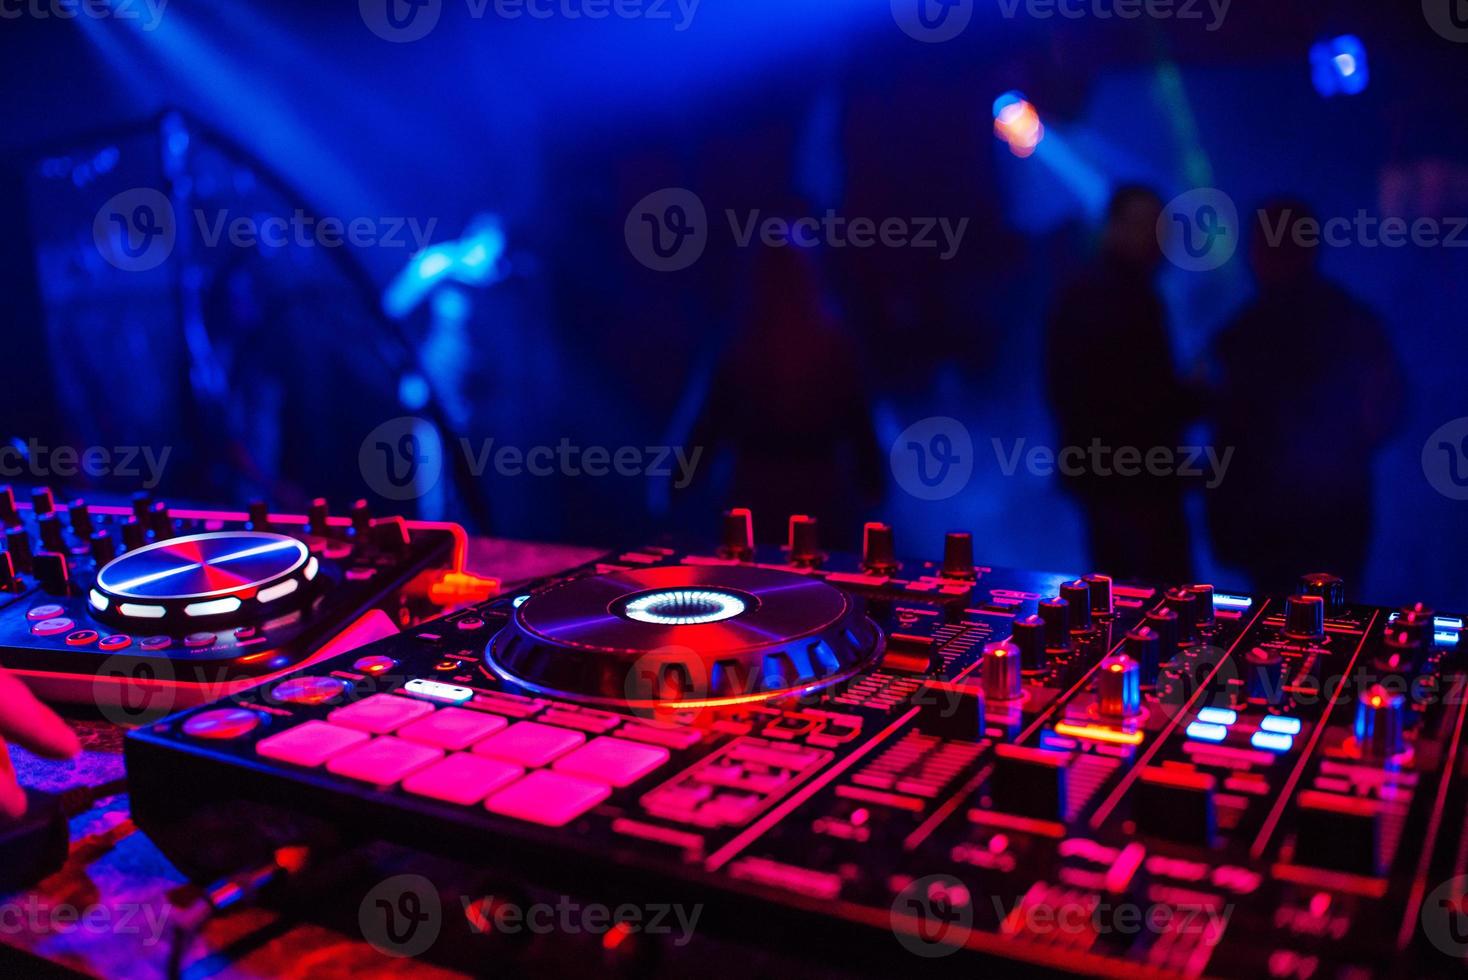 console dj pour mixer de la musique avec des personnes floues dansant lors d'une soirée en discothèque photo